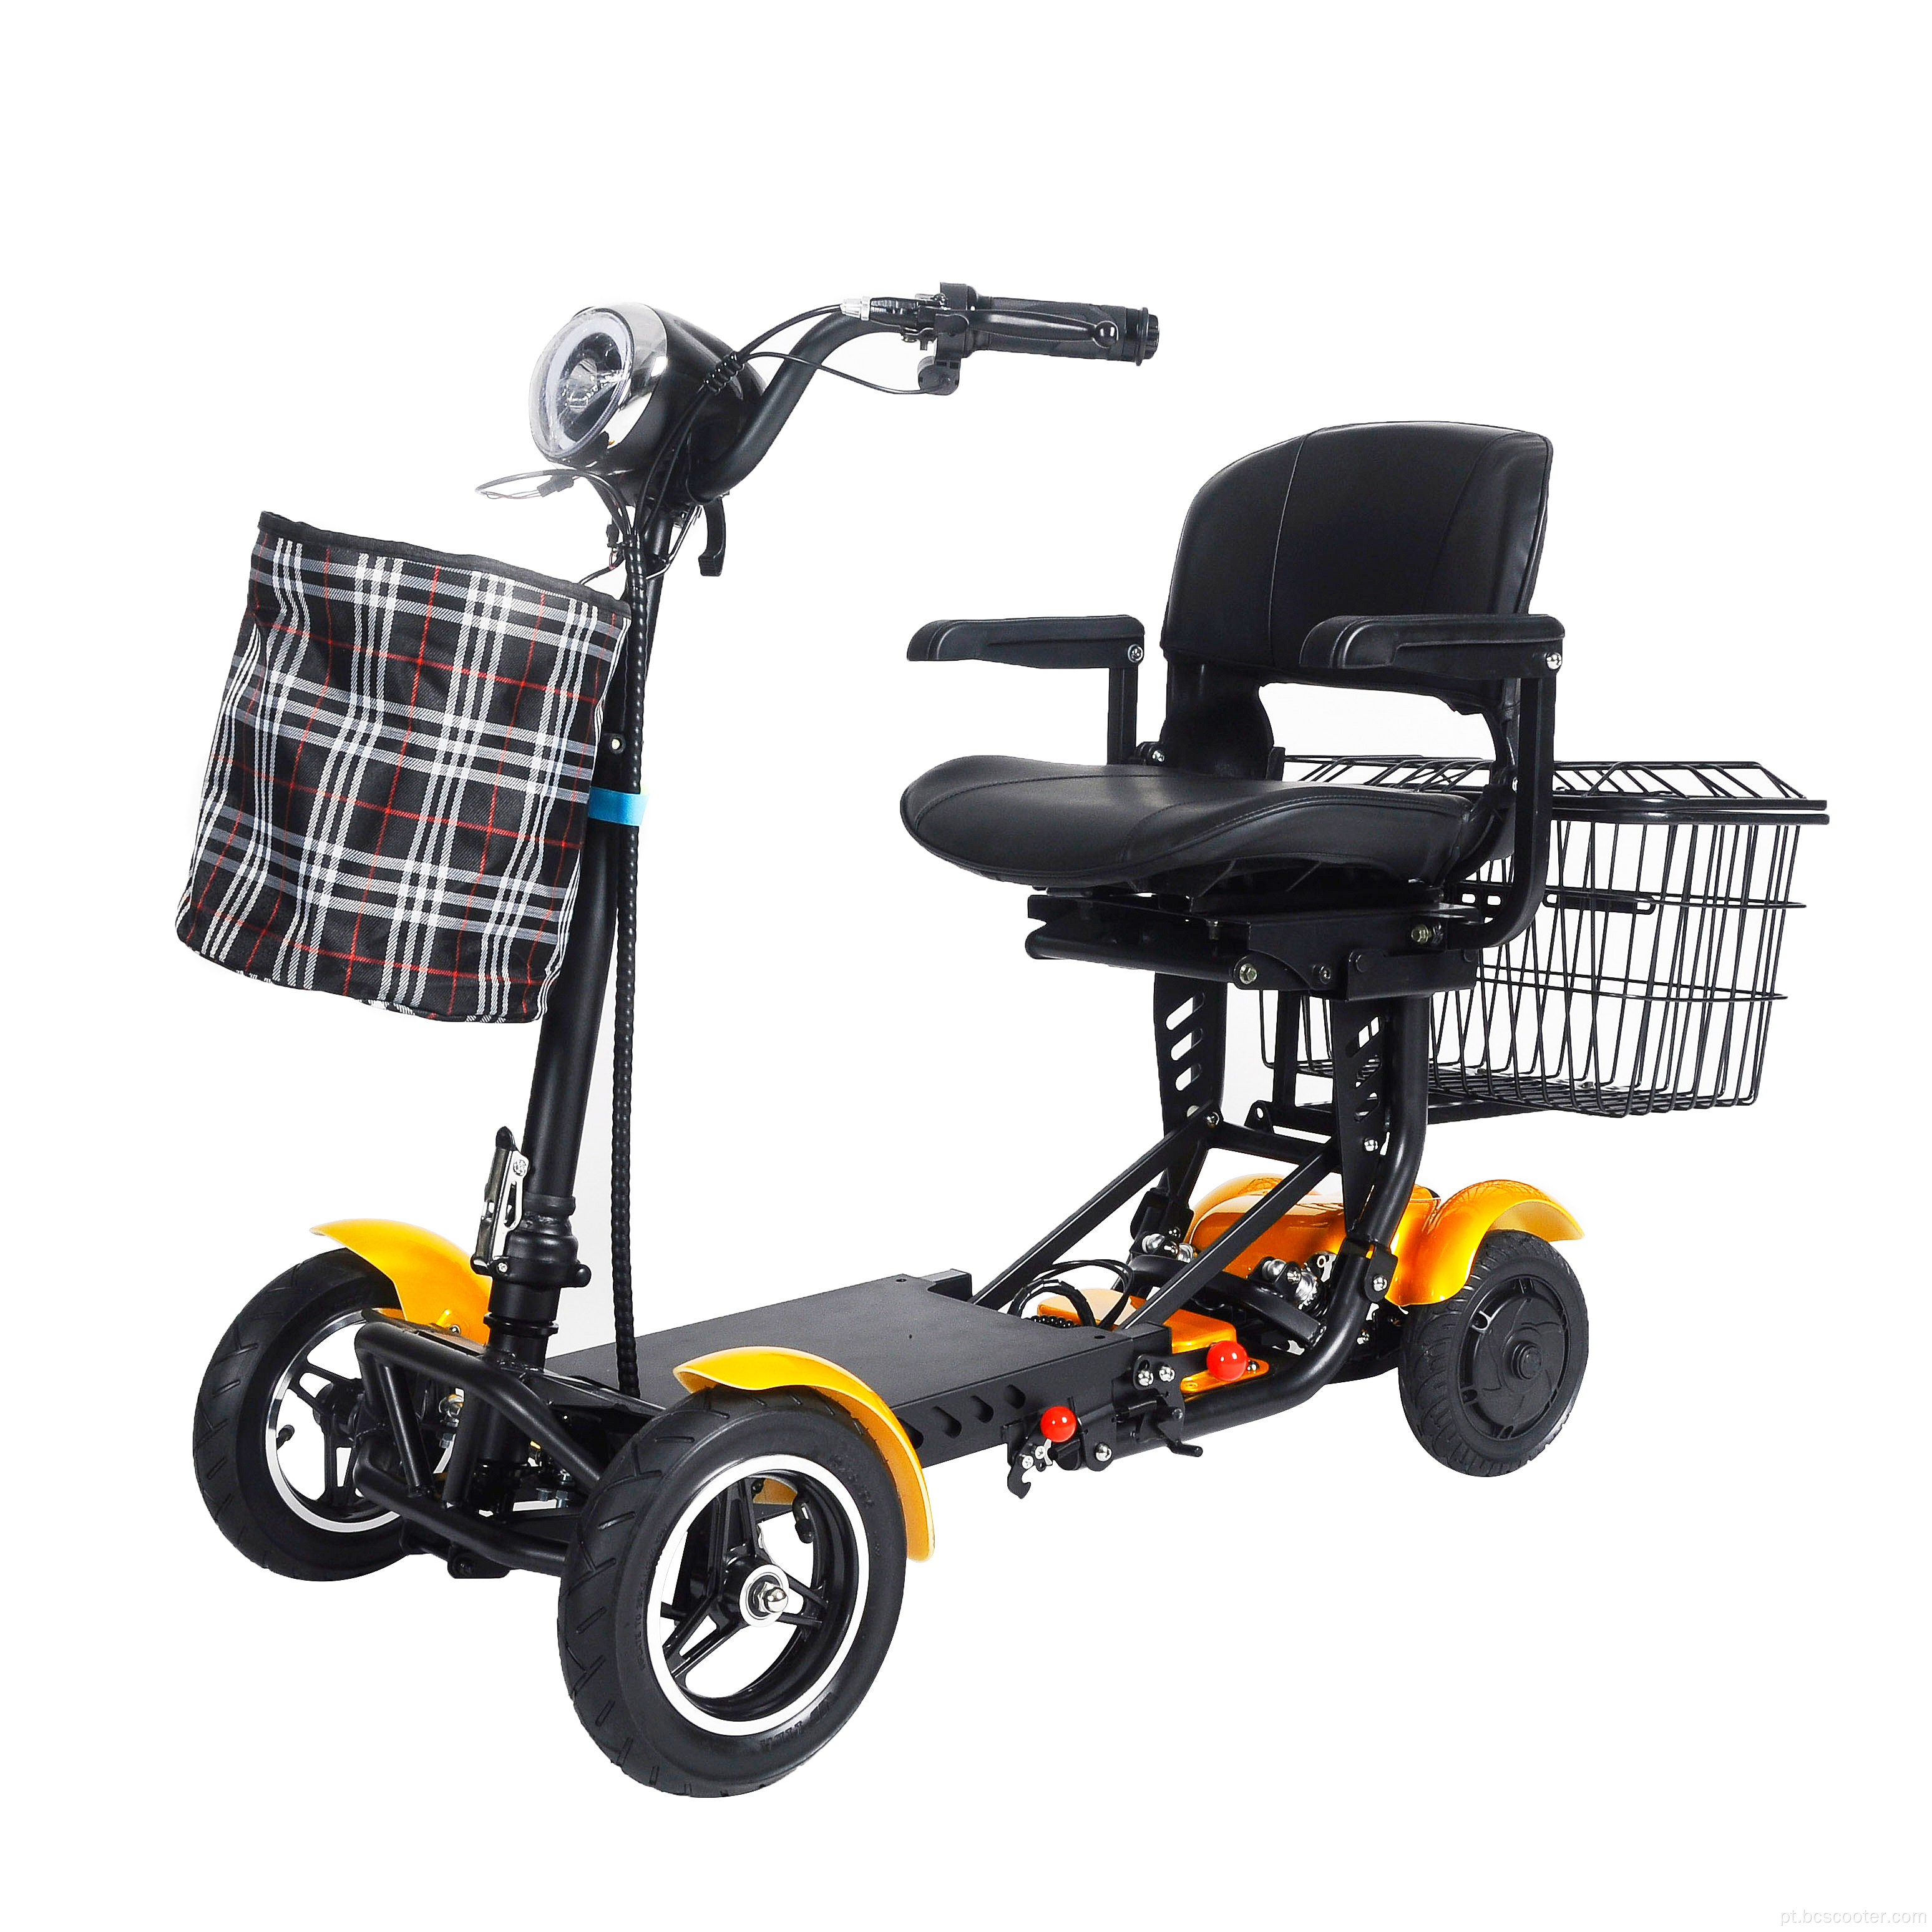 Scooter home adulto barato pessoas com deficiência elétrica scooter elétrica